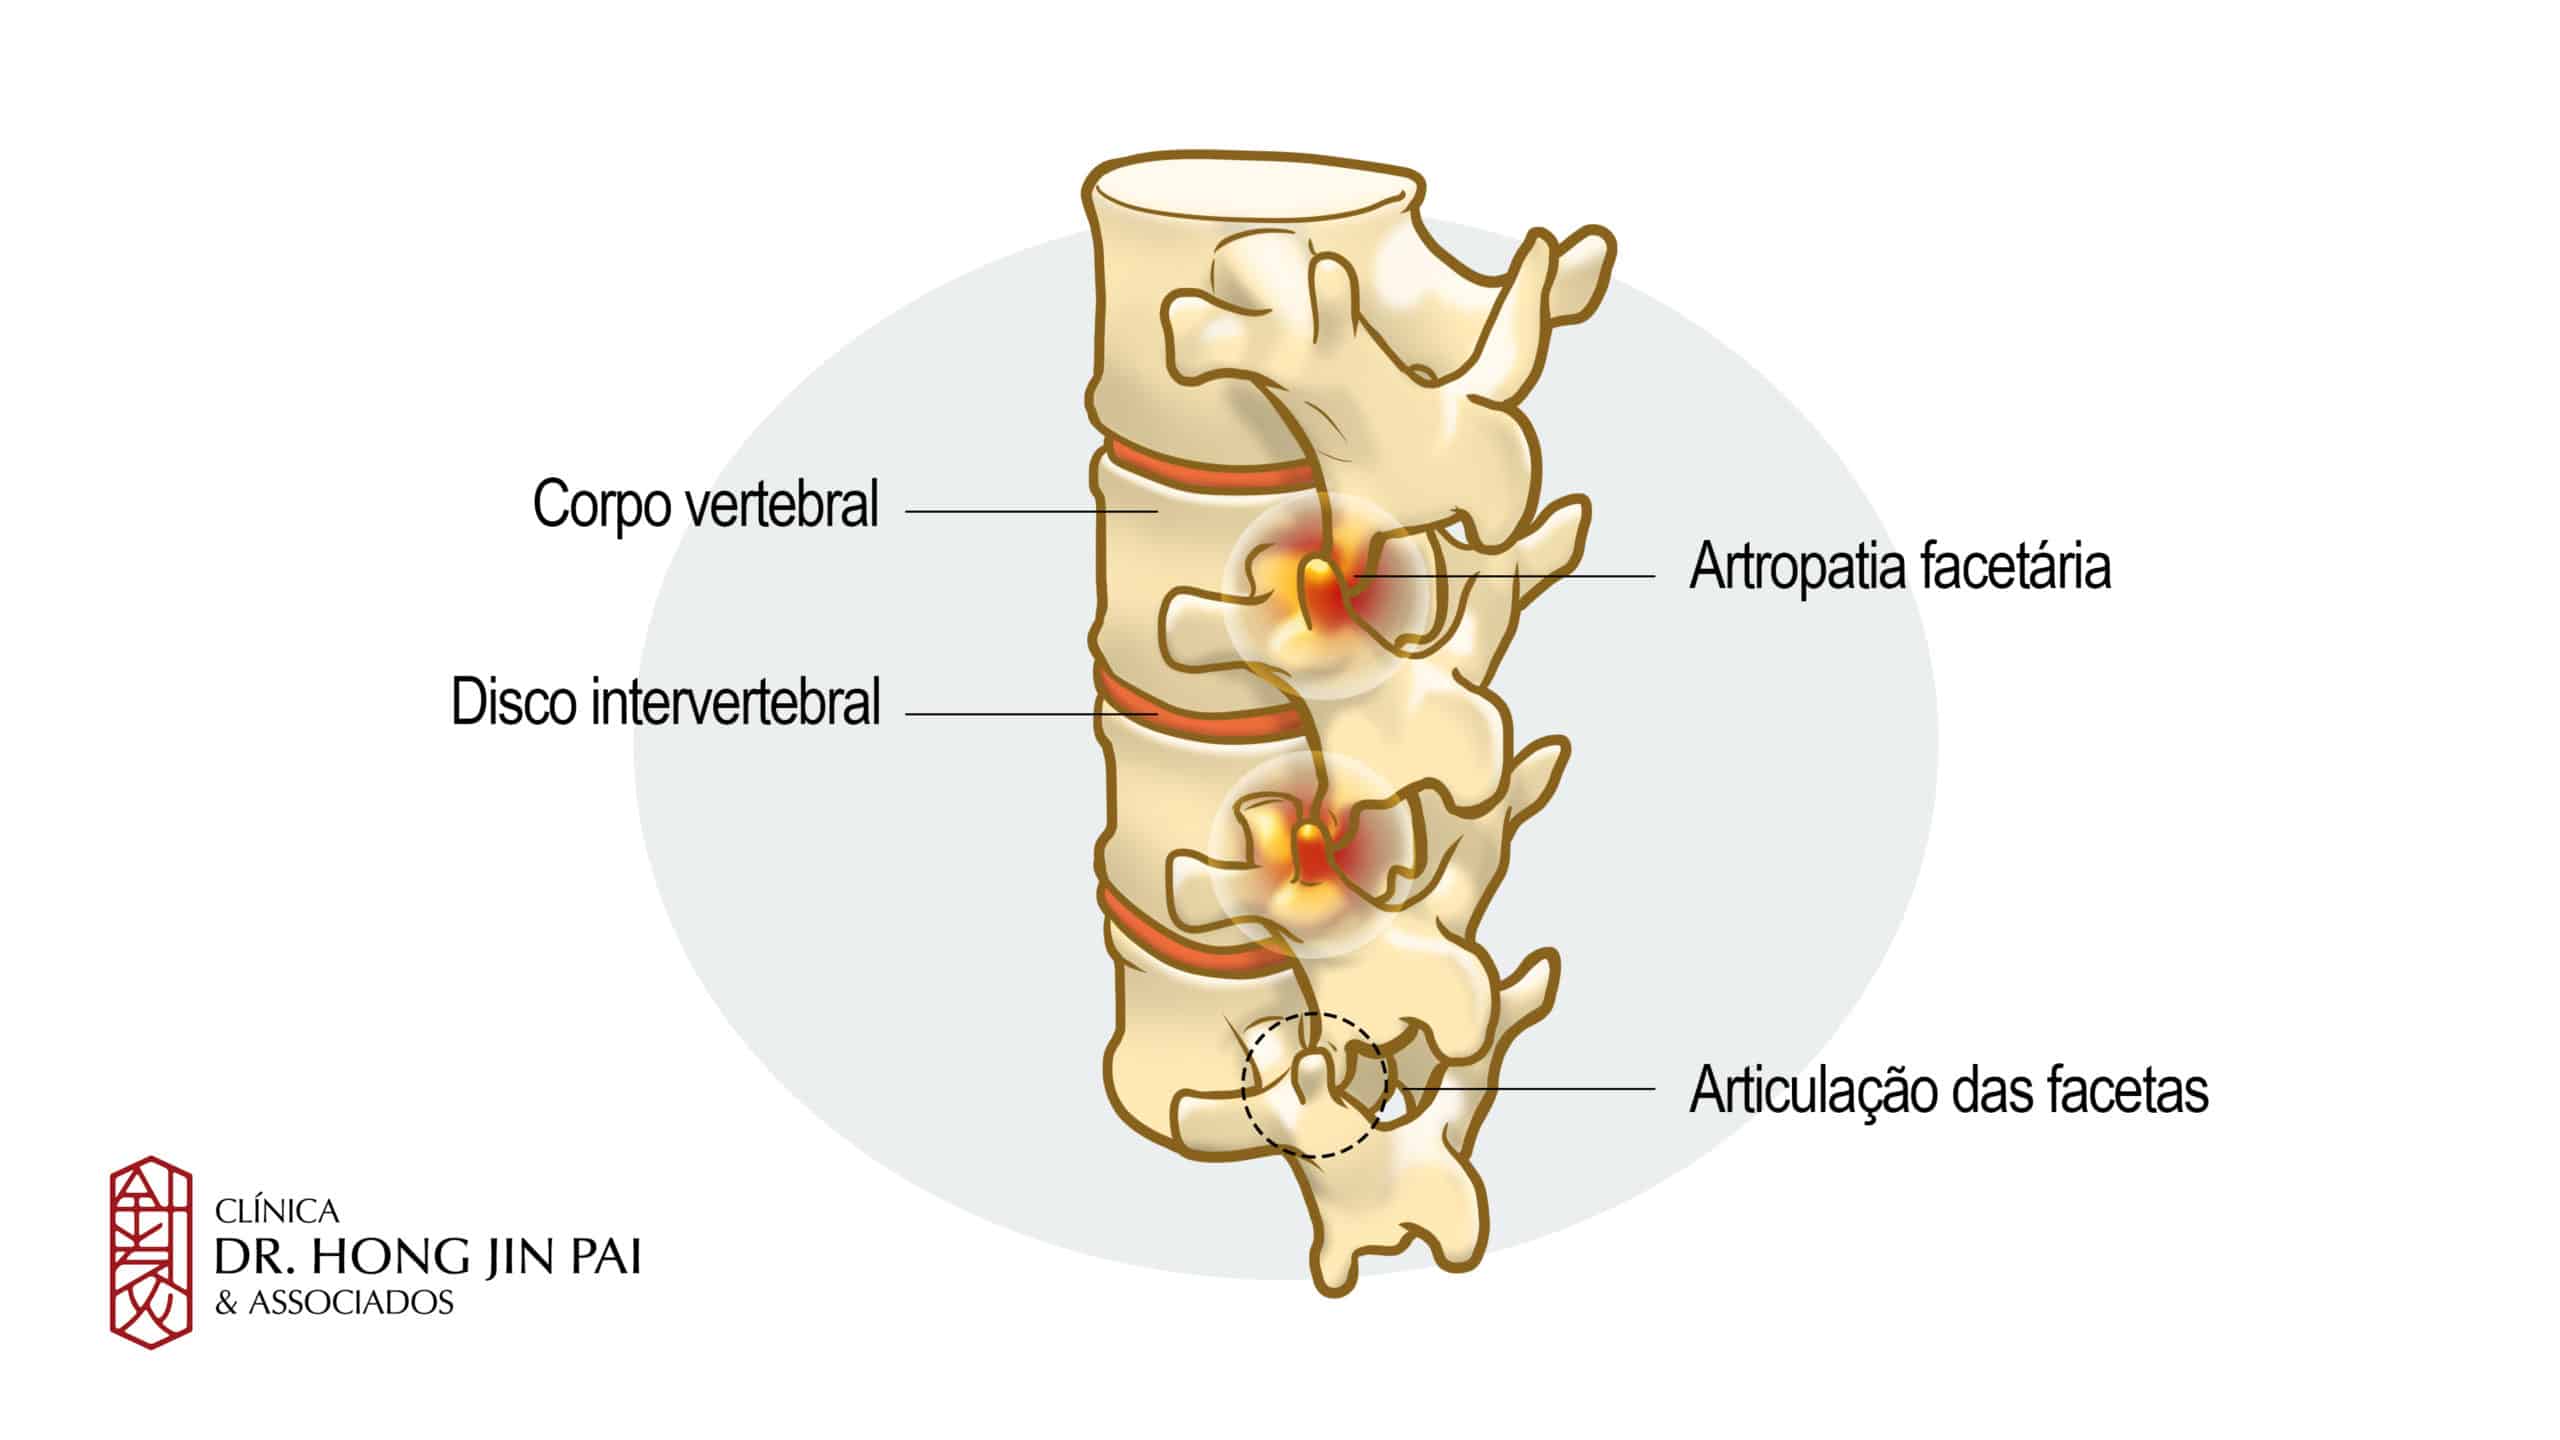 Dor Facetária. É uma condição muito comum na coluna vertebral e uma das principais causas de dor crônica